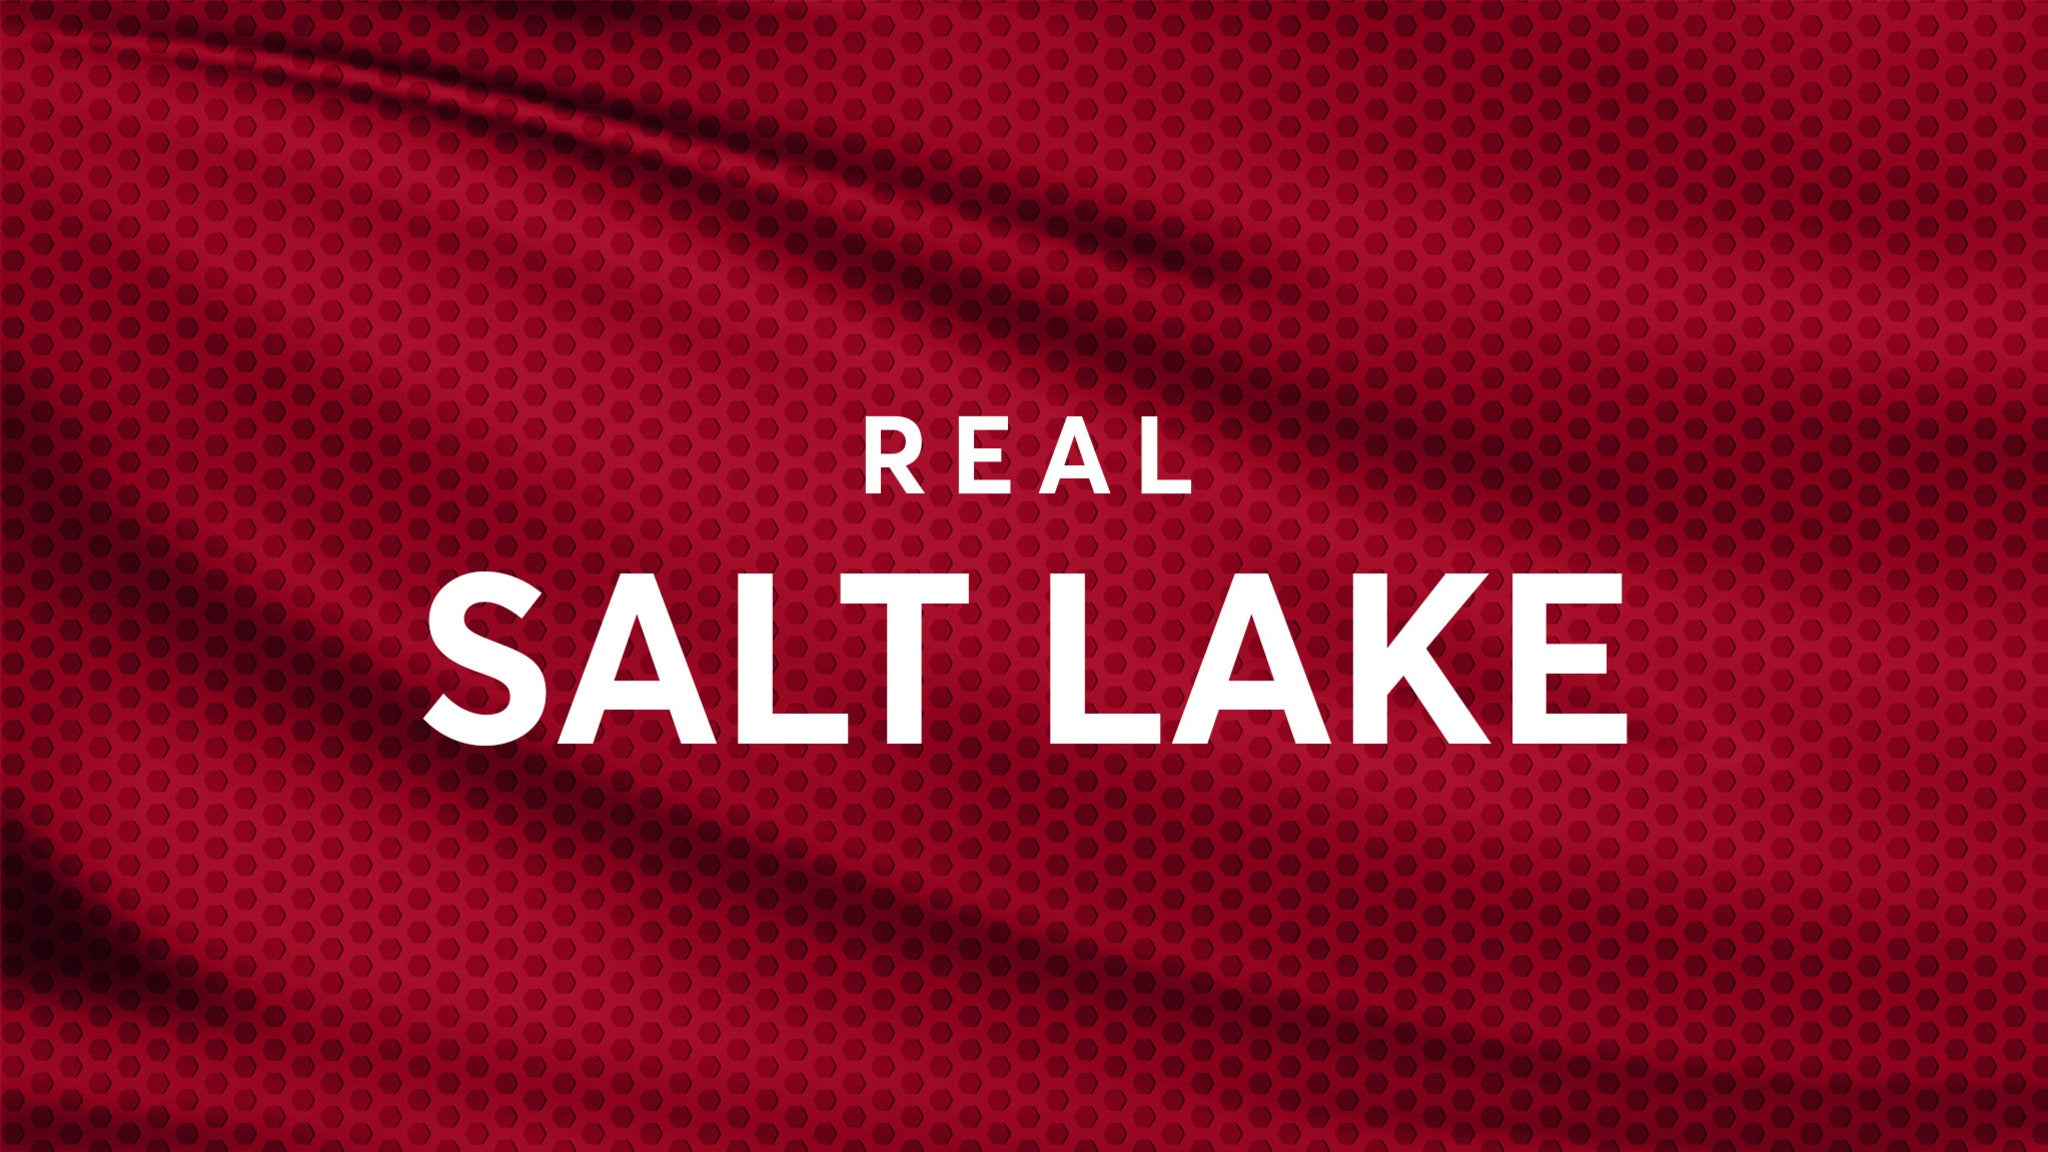 Atlanta United FC vs. Real Salt Lake in Atlanta promo photo for PSL presale offer code